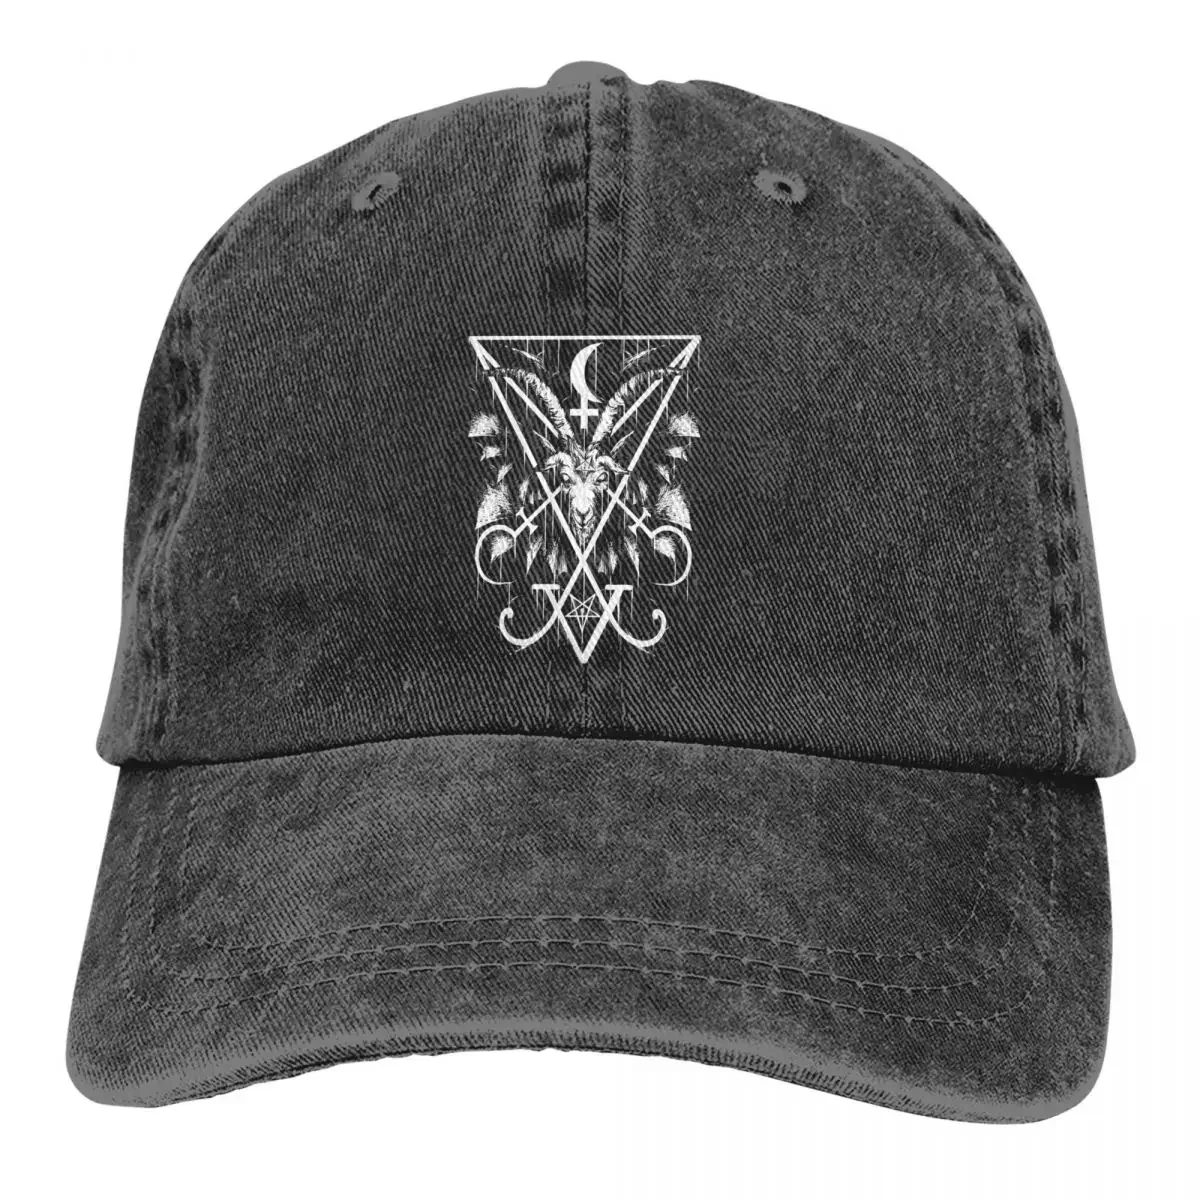 

Washed Men's Baseball Cap SIGIL Trucker Snapback Cowboy Caps Dad Hat Baphomet Satan Lucifer Golf Hats